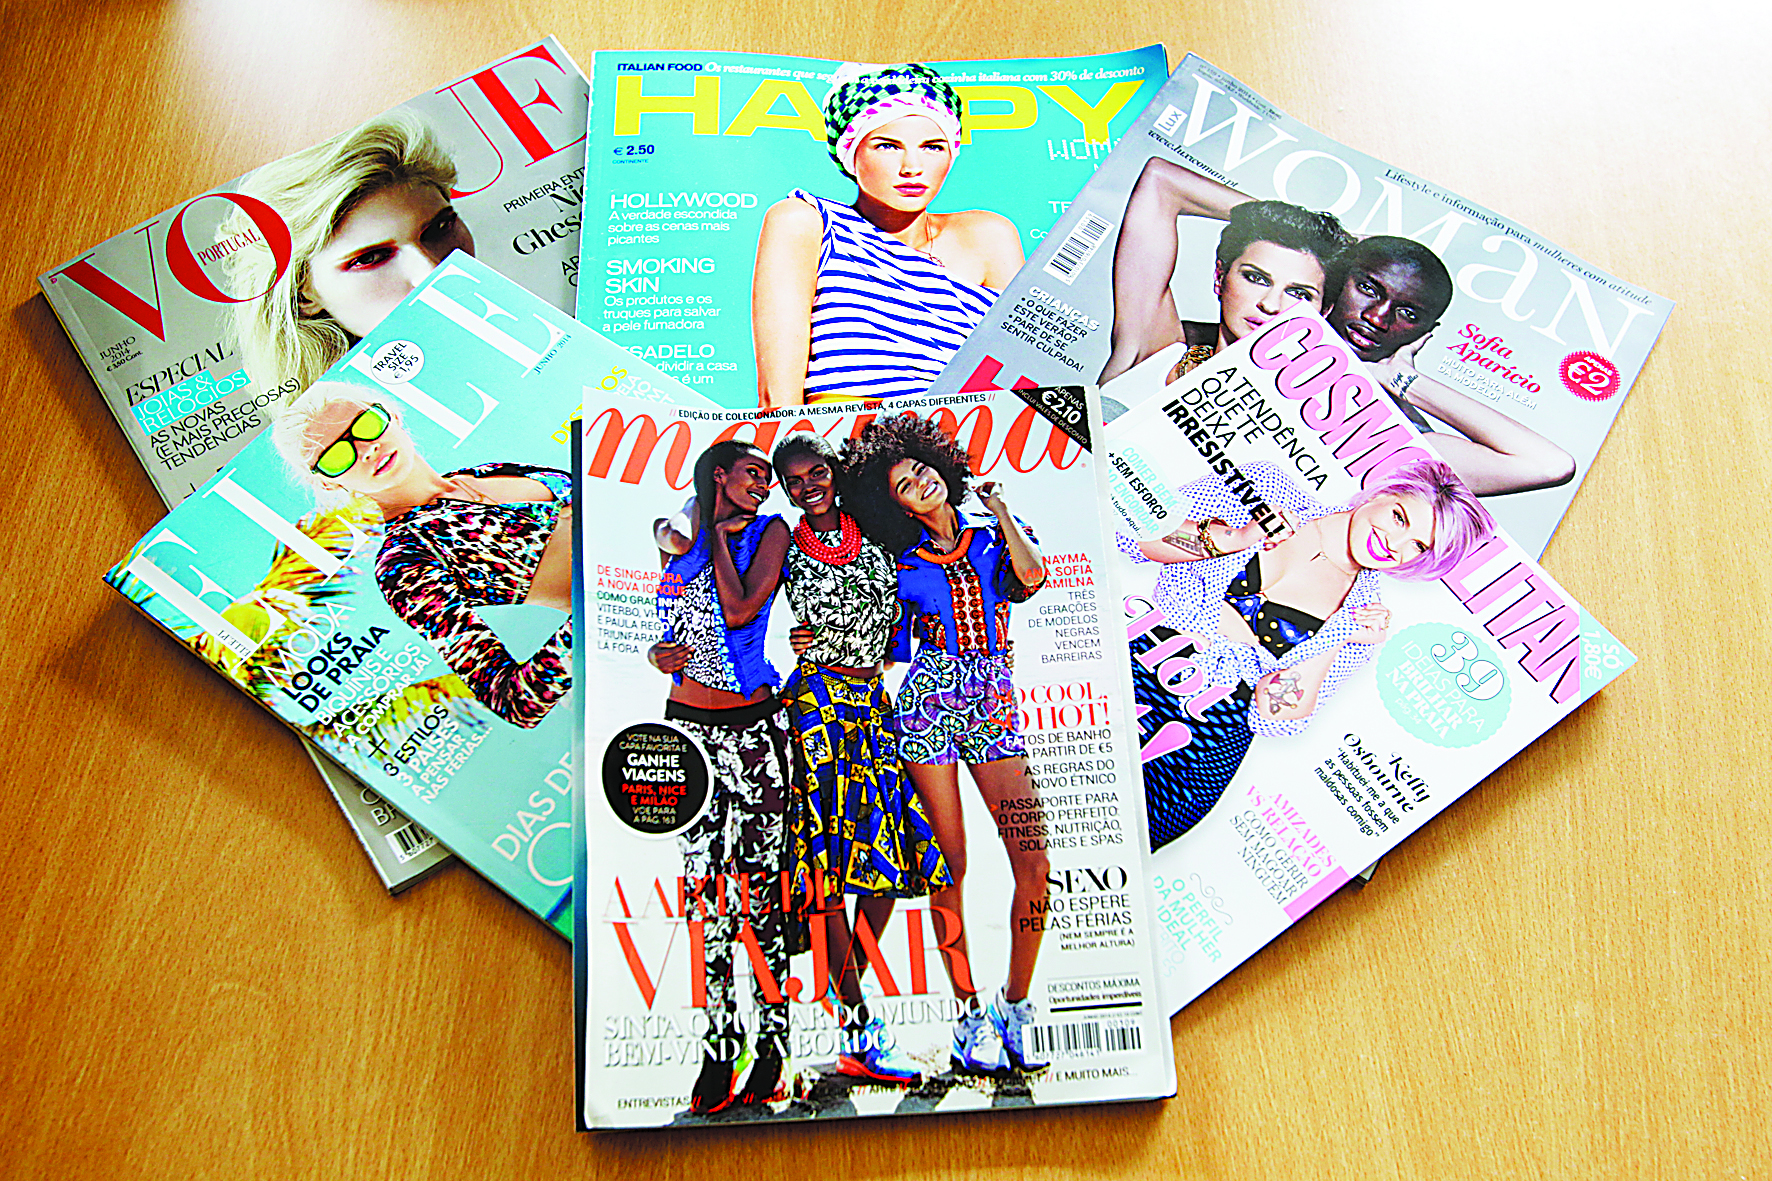 Revistas femininas: Dividir e reinar